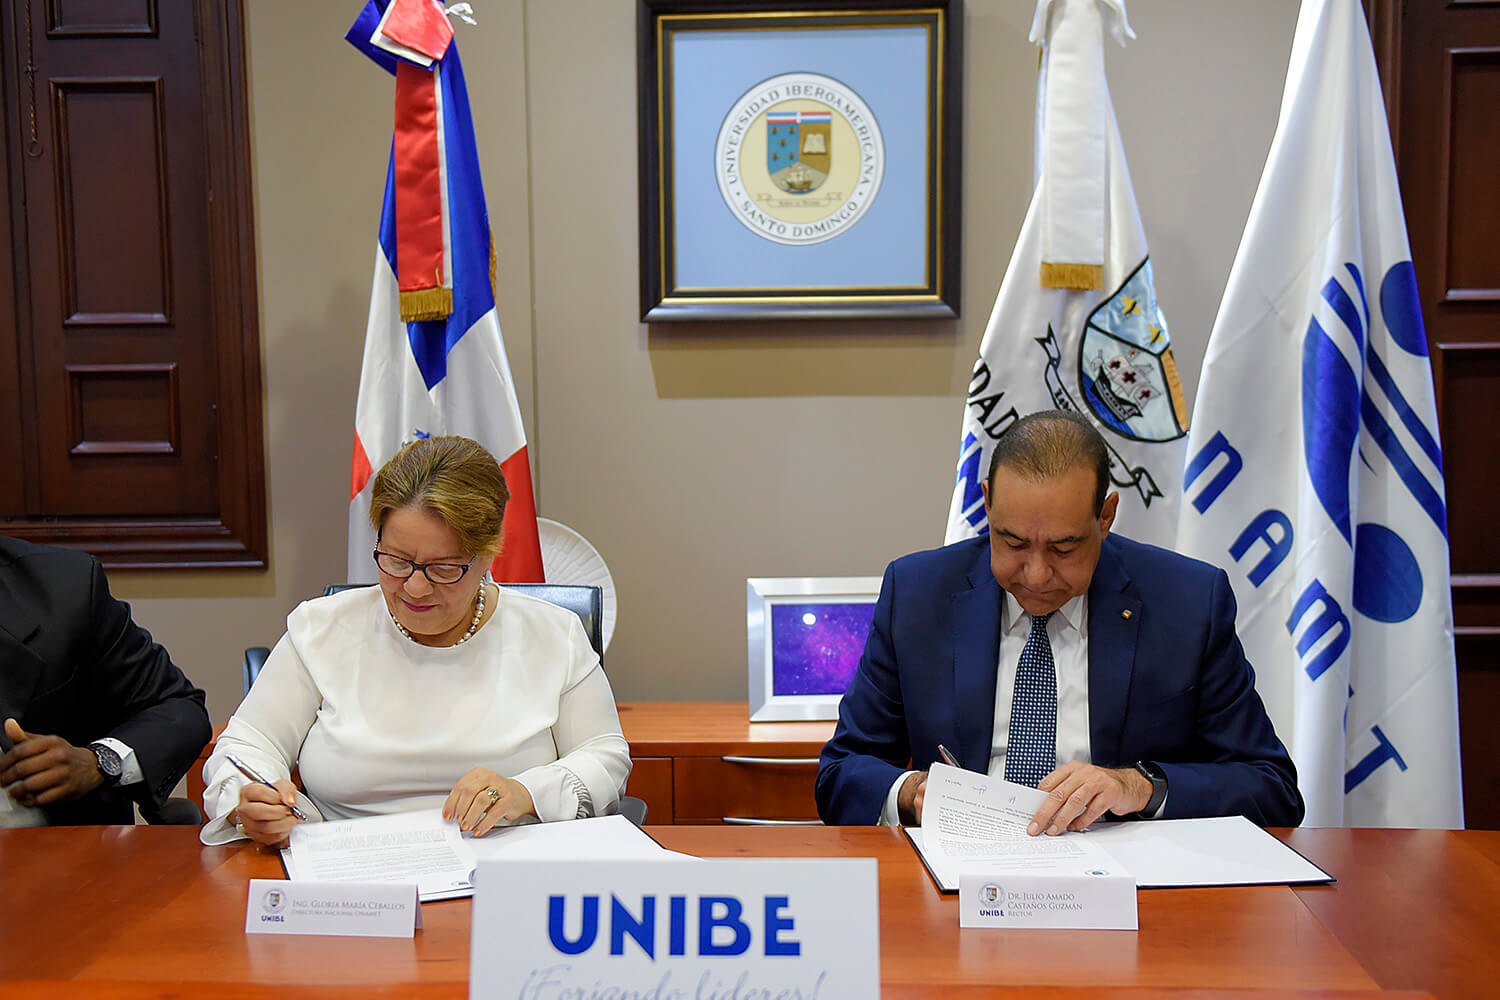 UNIBE firma acuerdo de colaboración con ONAMET